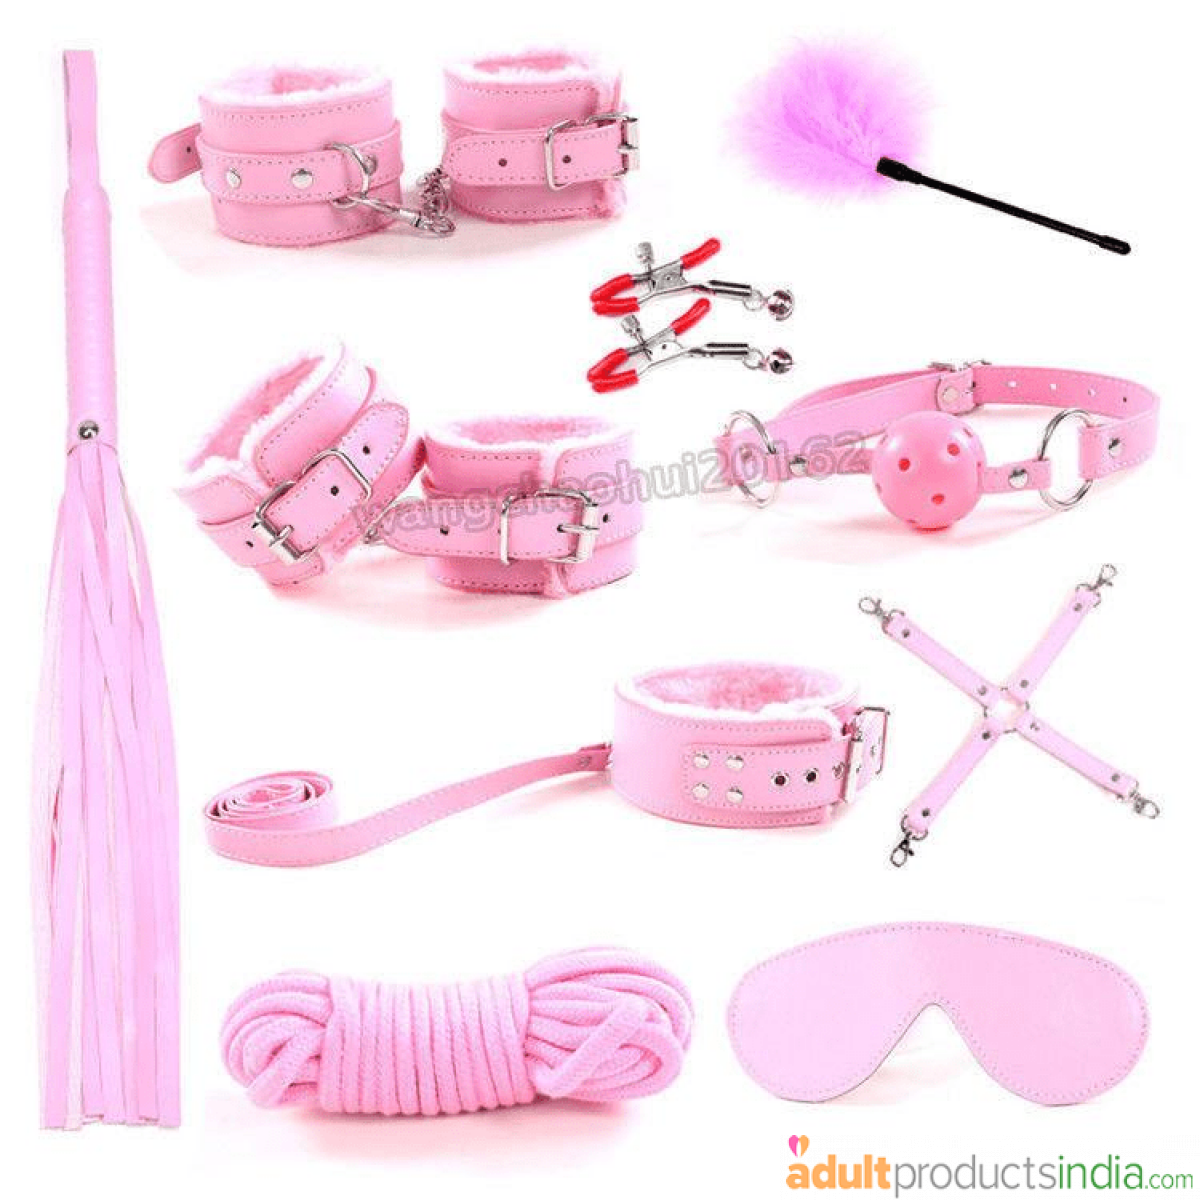 Bondage Sex Love Kit - (10 Pc Set) Pink & Purple